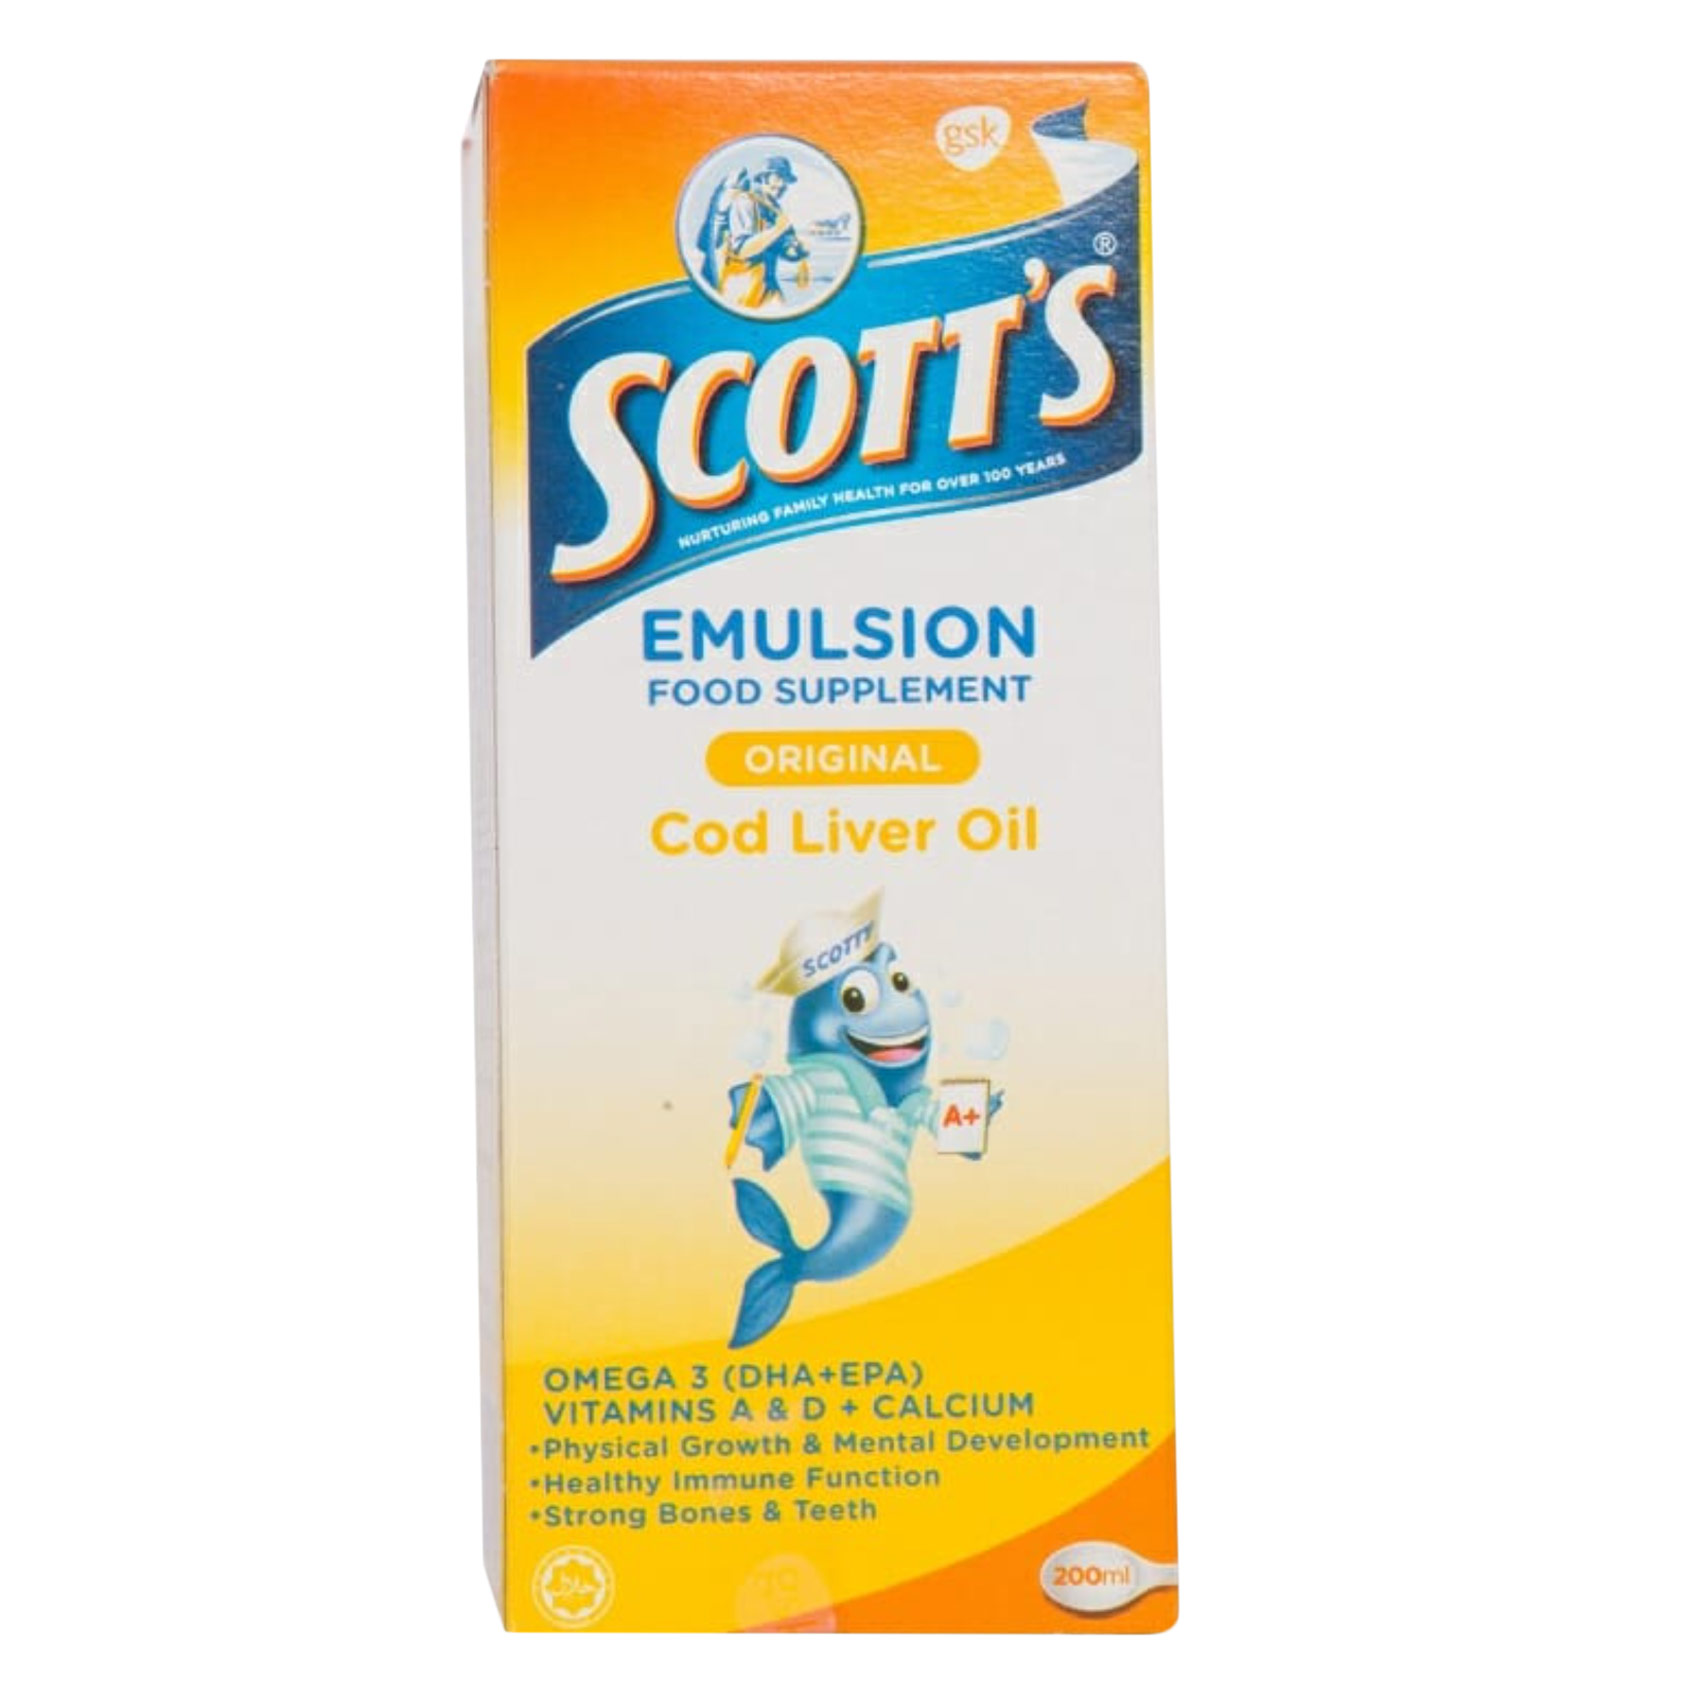 Scotts Emulsion Regular 200Ml